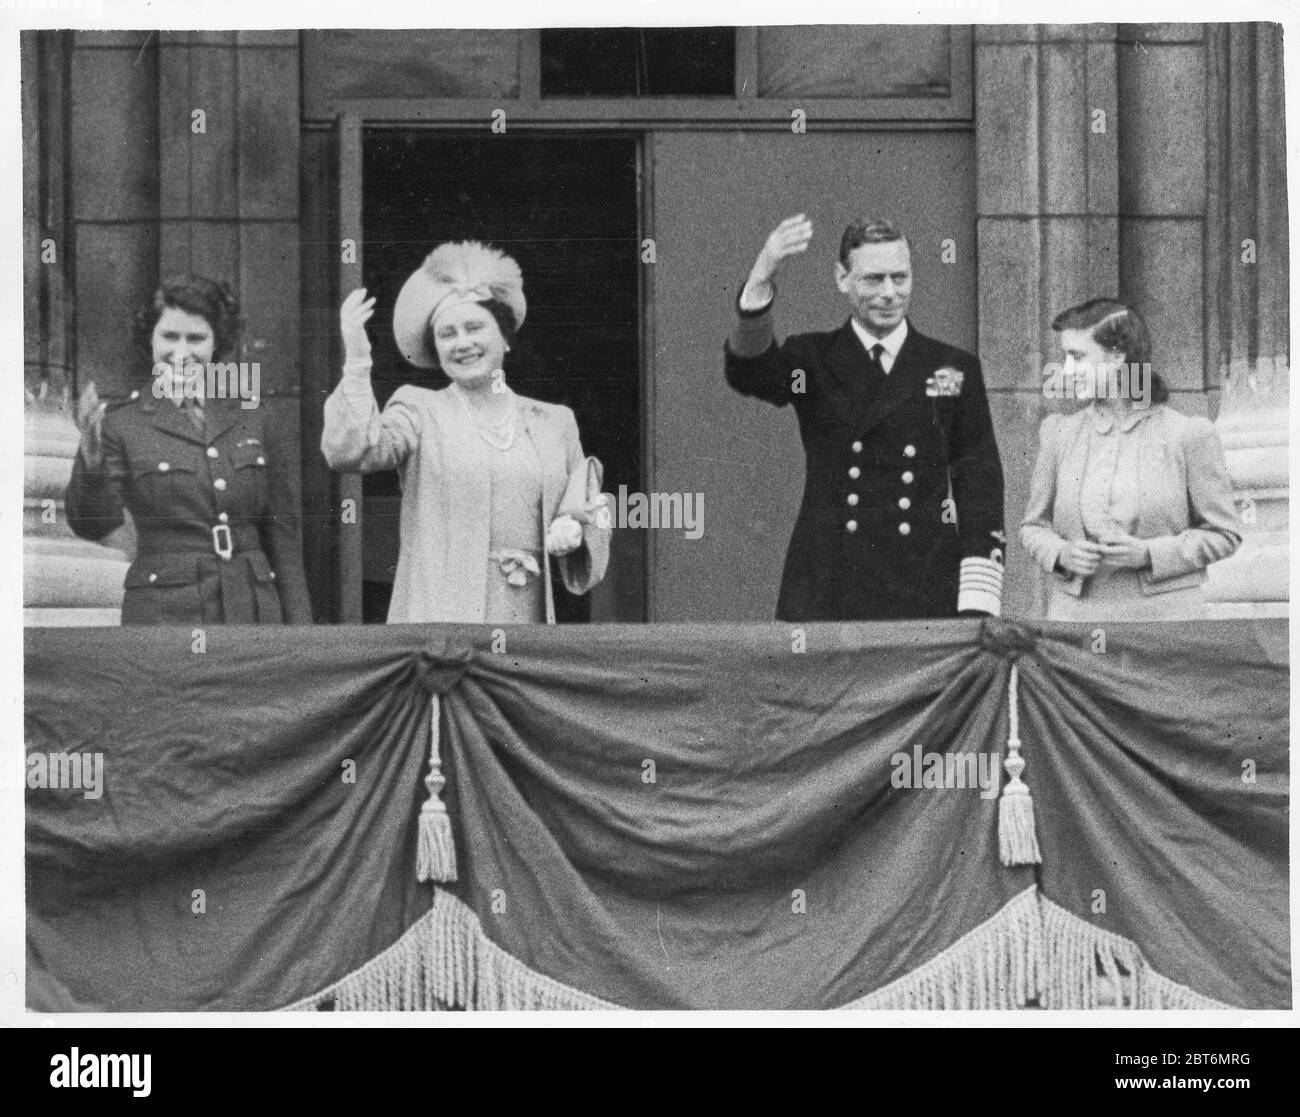 Vintage World war II Photograph - The King, George VI von Großbritannien begleitet von der Königin und den Prinzessinnen Elizabeth und Margaret auf dem Balkon des Buckingham Palace, VE Day Celebration. Stockfoto